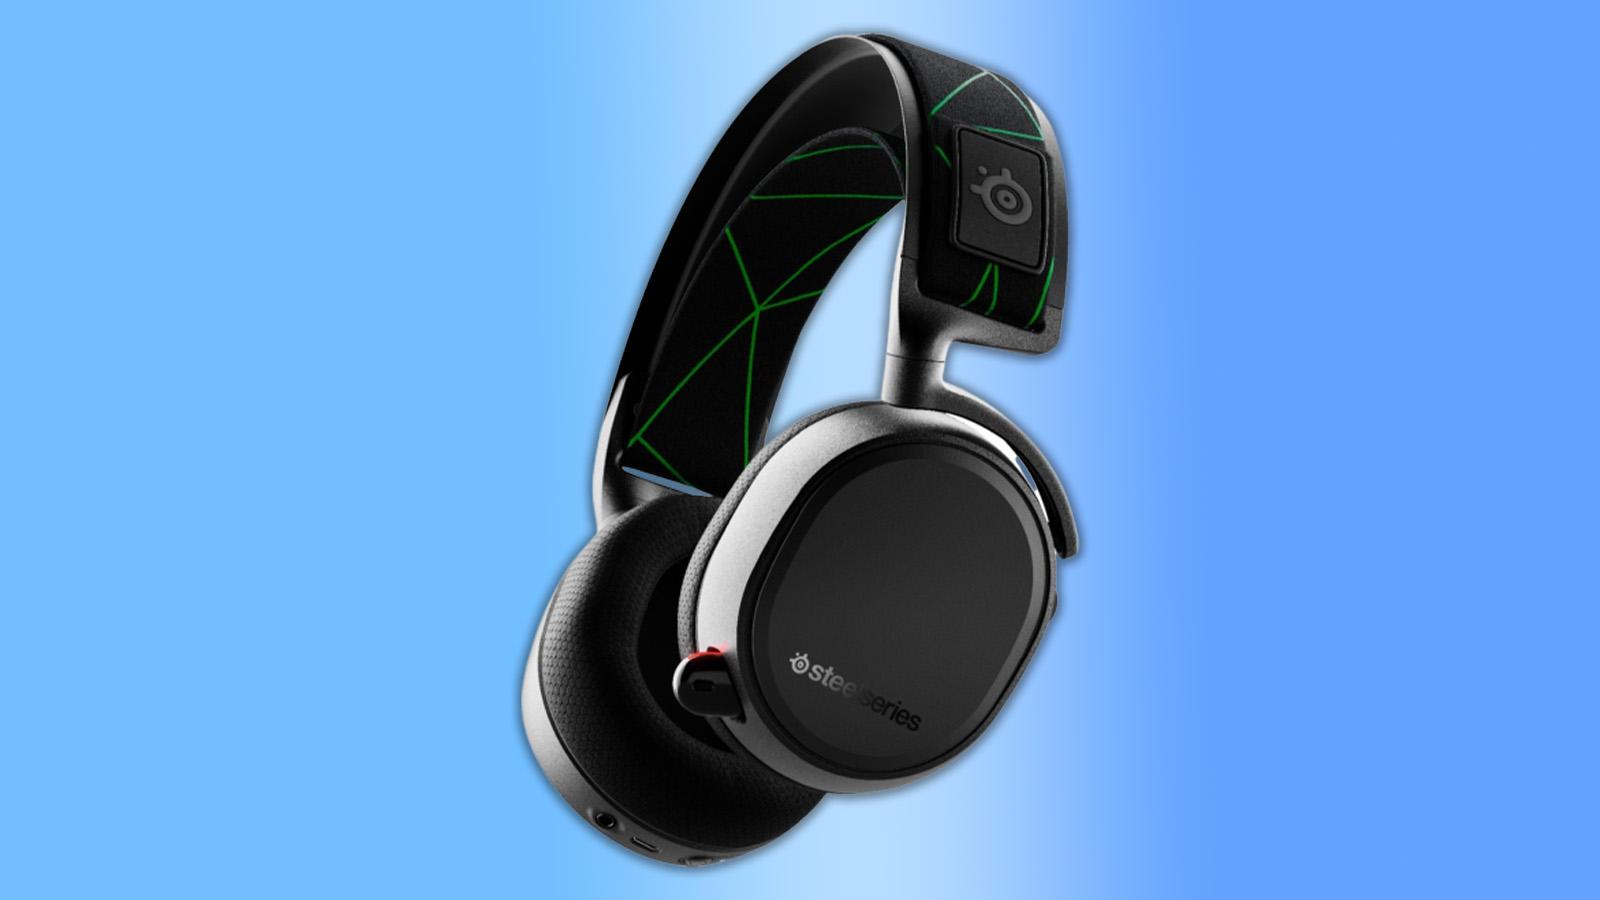 Arctis 9X SteelSeries headset